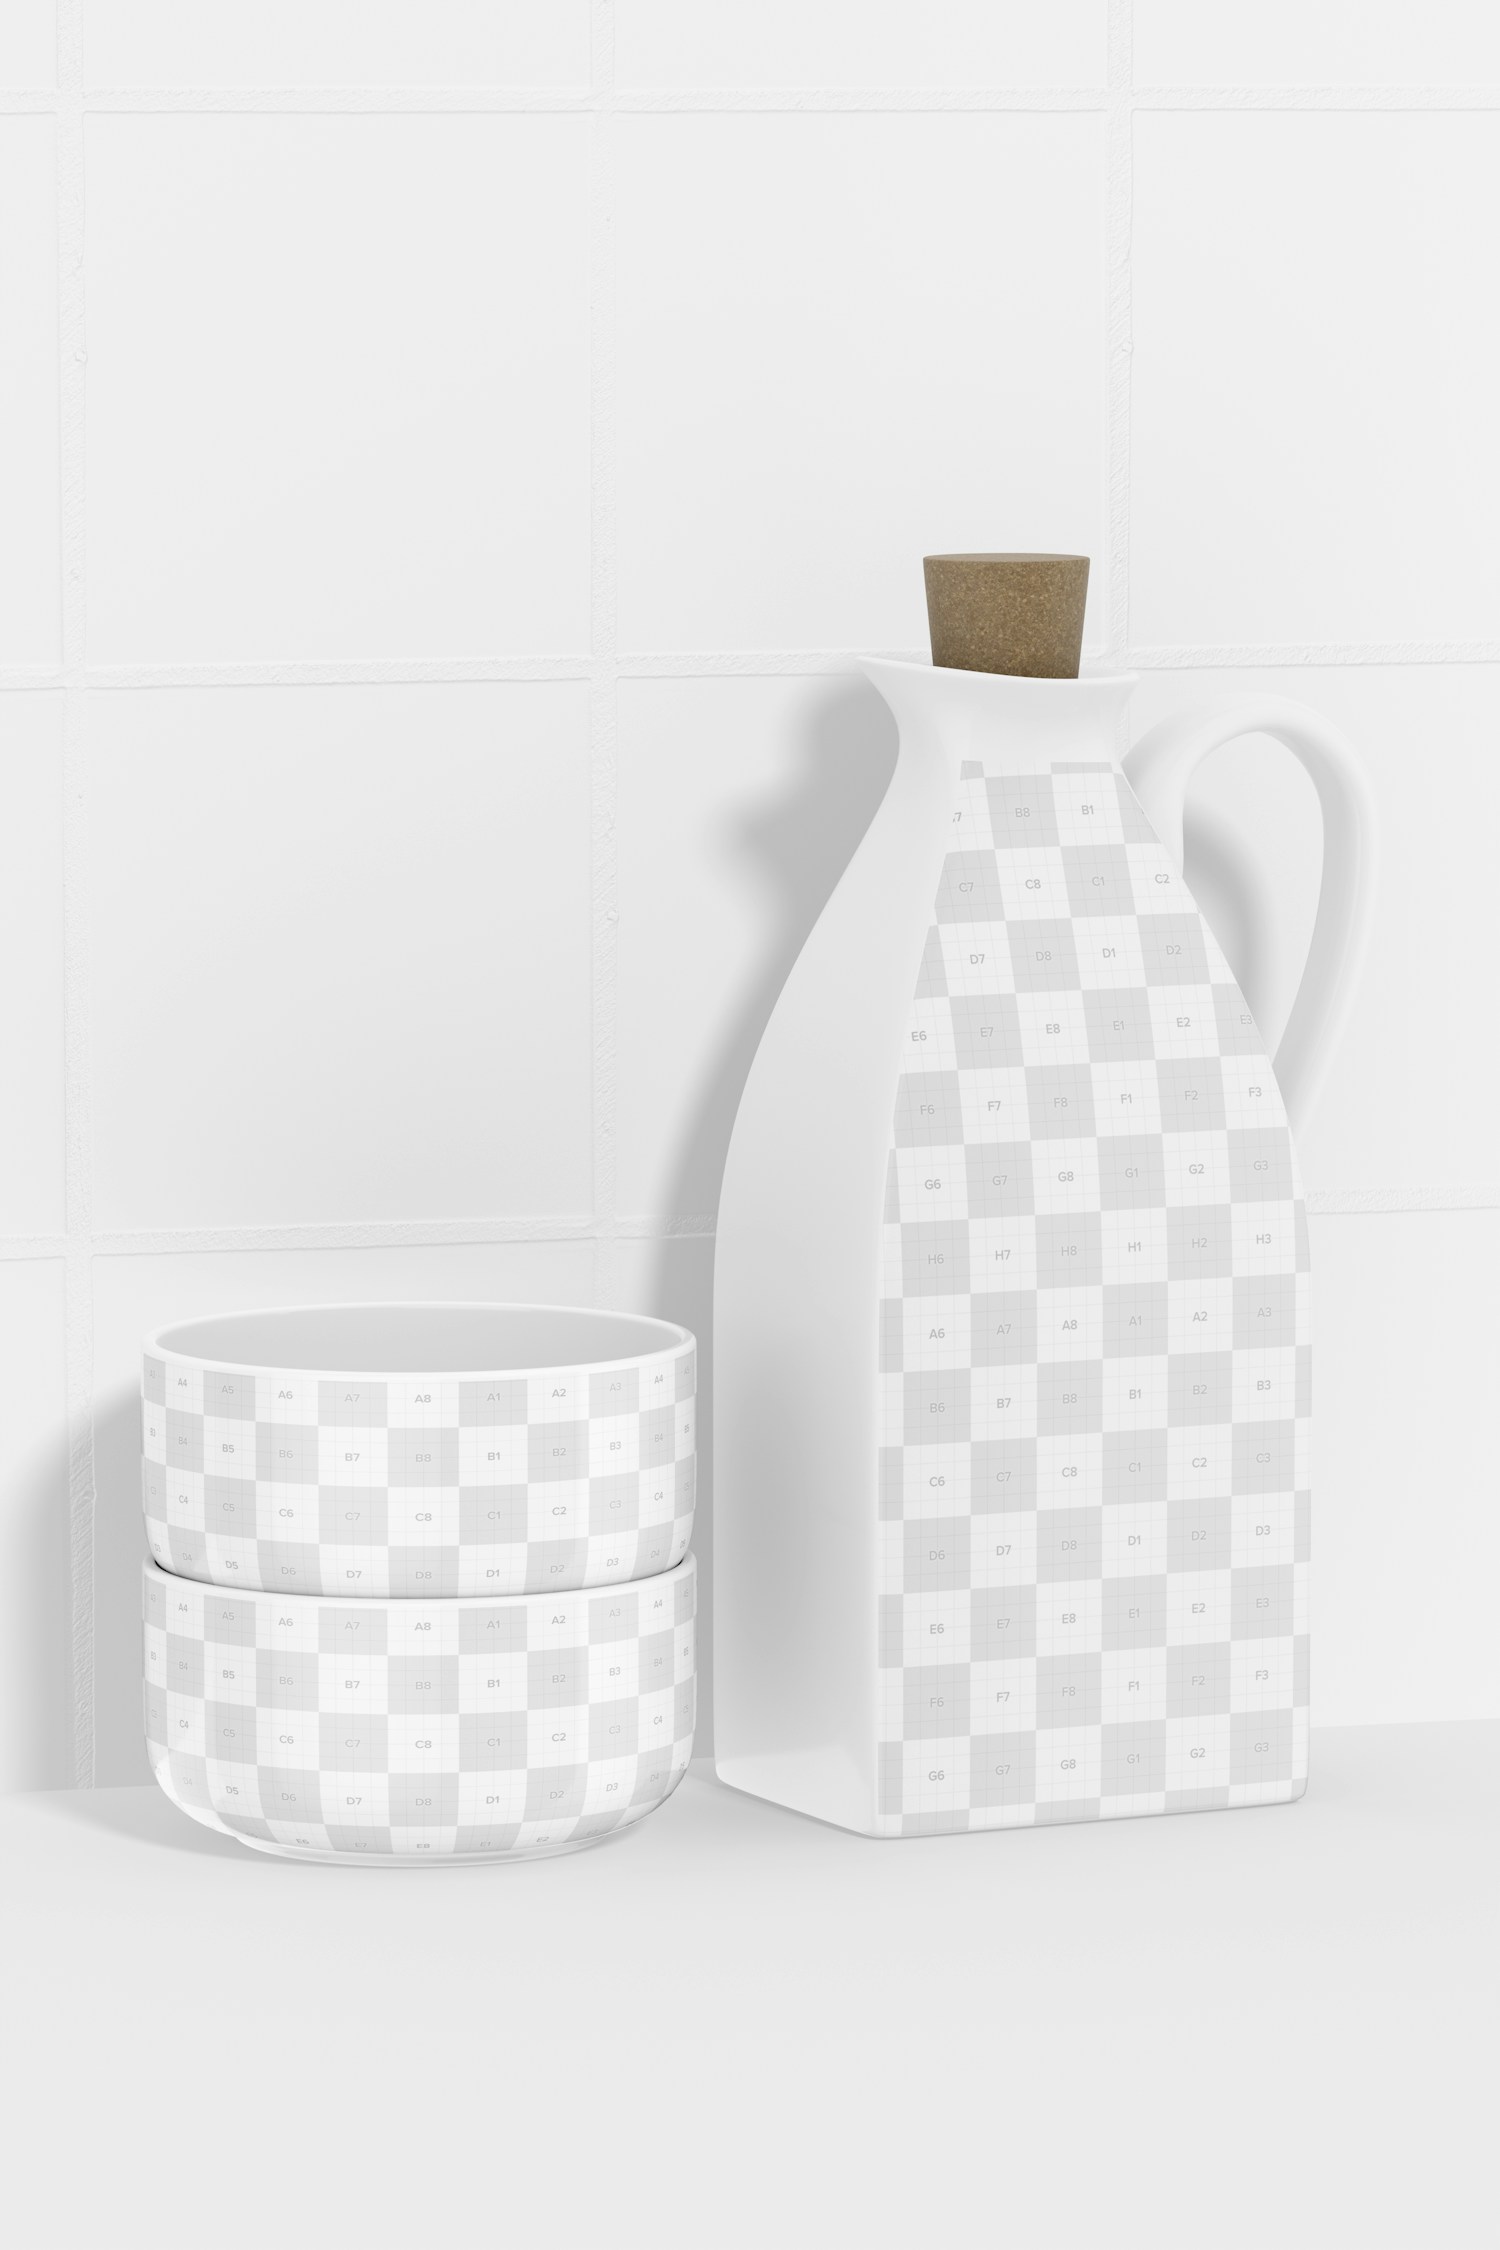 Ceramic Oil Bottle with Bowls Mockup